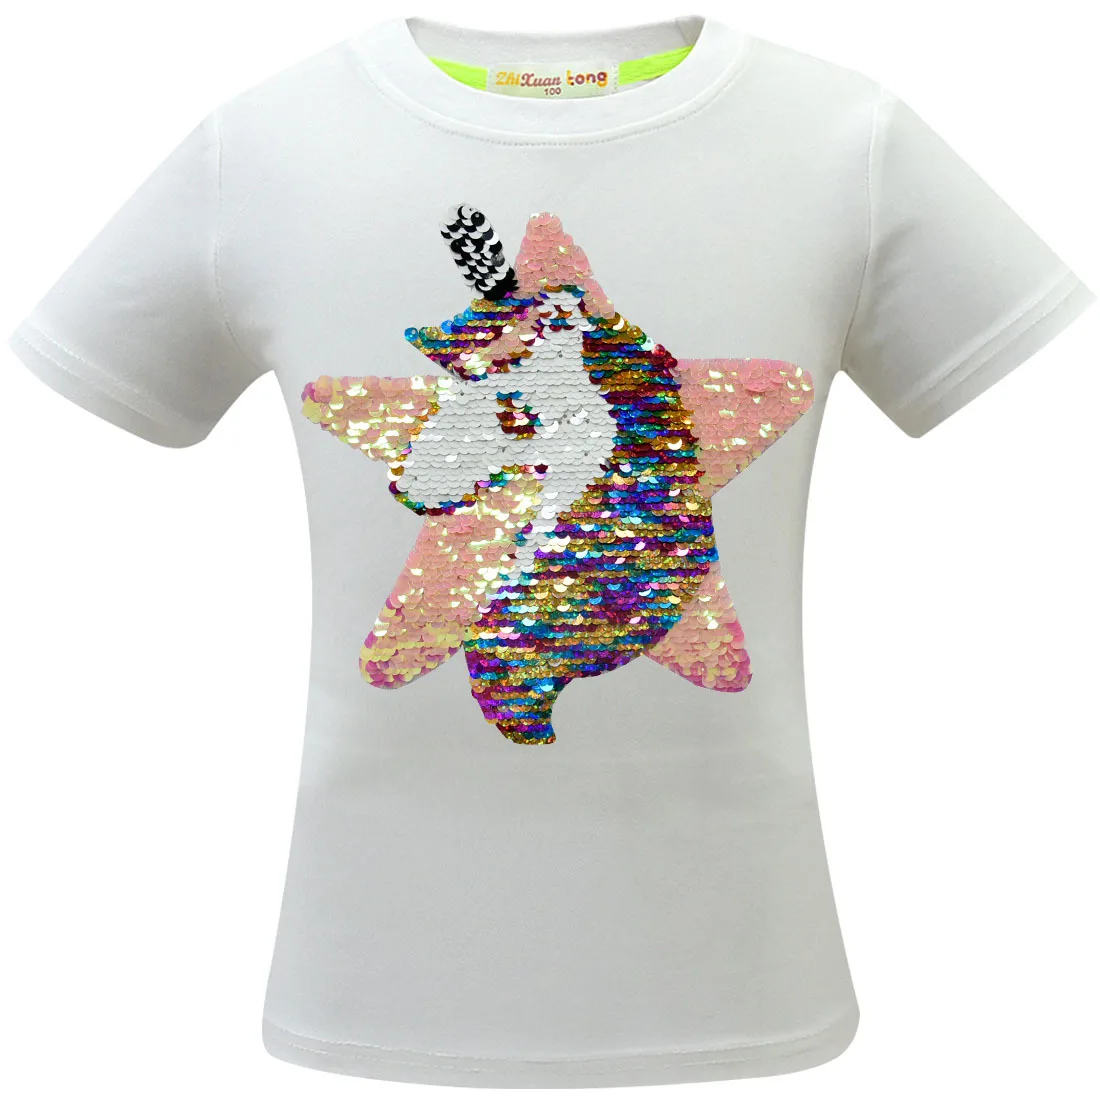 Новая розовая футболка с блестками для девочек детские двухсторонние футболки с единорогом и звездами детские топы, футболки с блестками